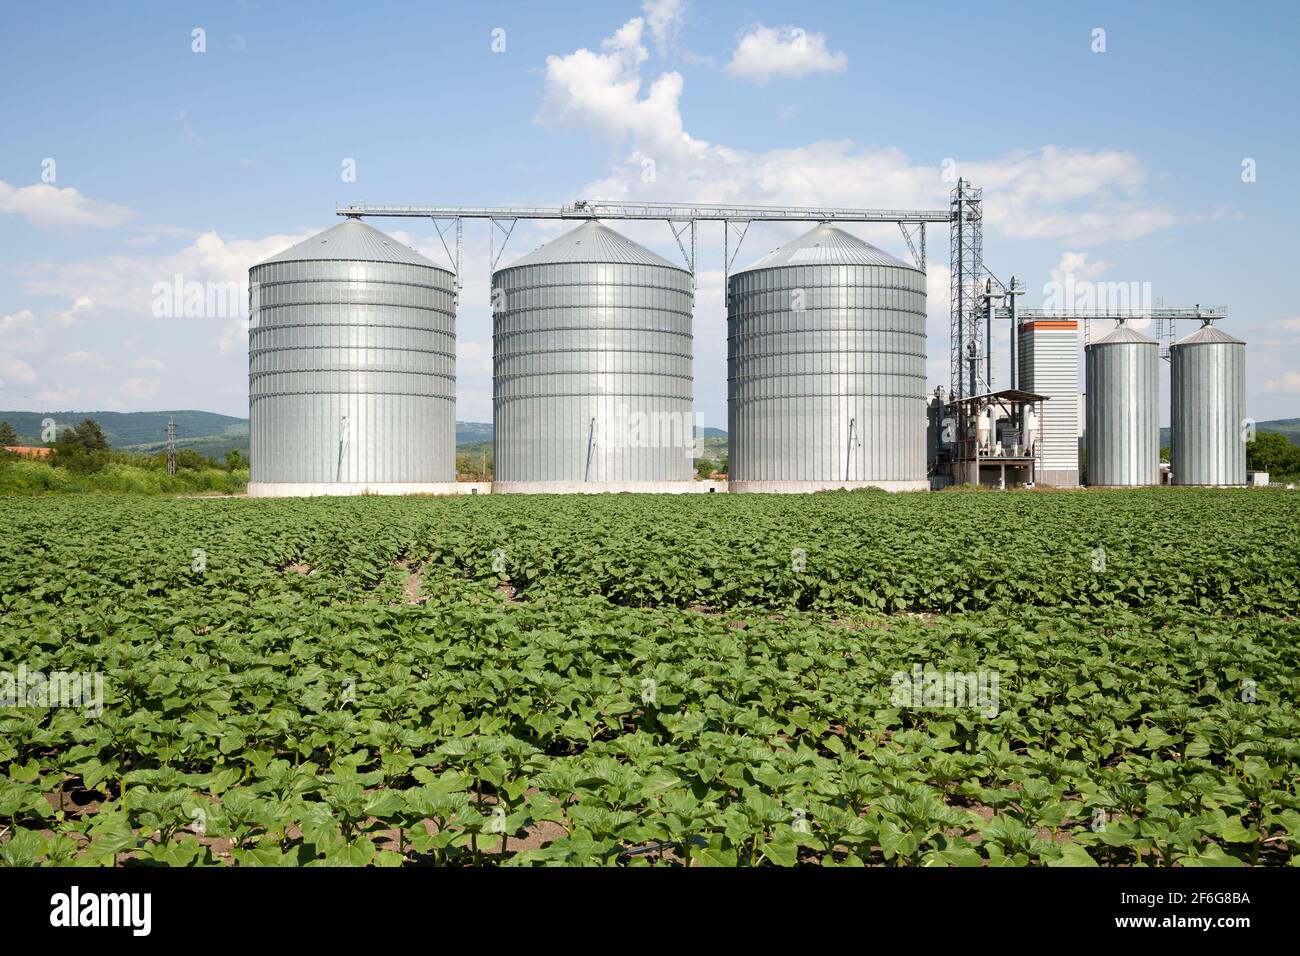 Silo agricole - extérieur du bâtiment, stockage et séchage des céréales, du  blé, du maïs, du soja, du tournesol contre le ciel bleu avec des nuages  blancs Photo Stock - Alamy